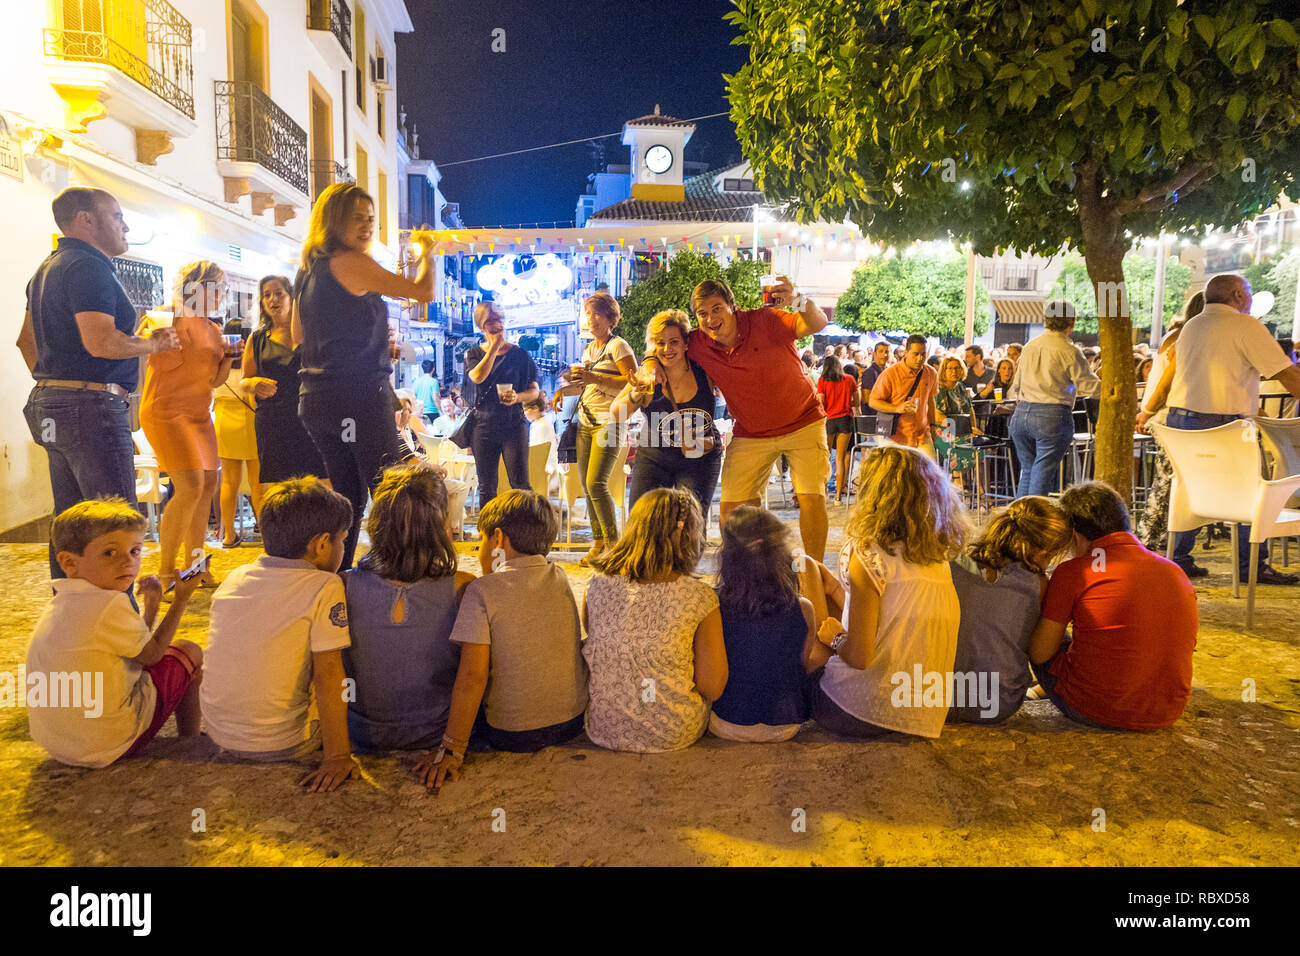 Eltern feiern auf einer Fiesta im dorfplatz, während ihre Kinder um 2 Uhr morgens auf dem Handy sind. Plaza Espana, Carcabuey, Andalusien. Spanien Stockfoto